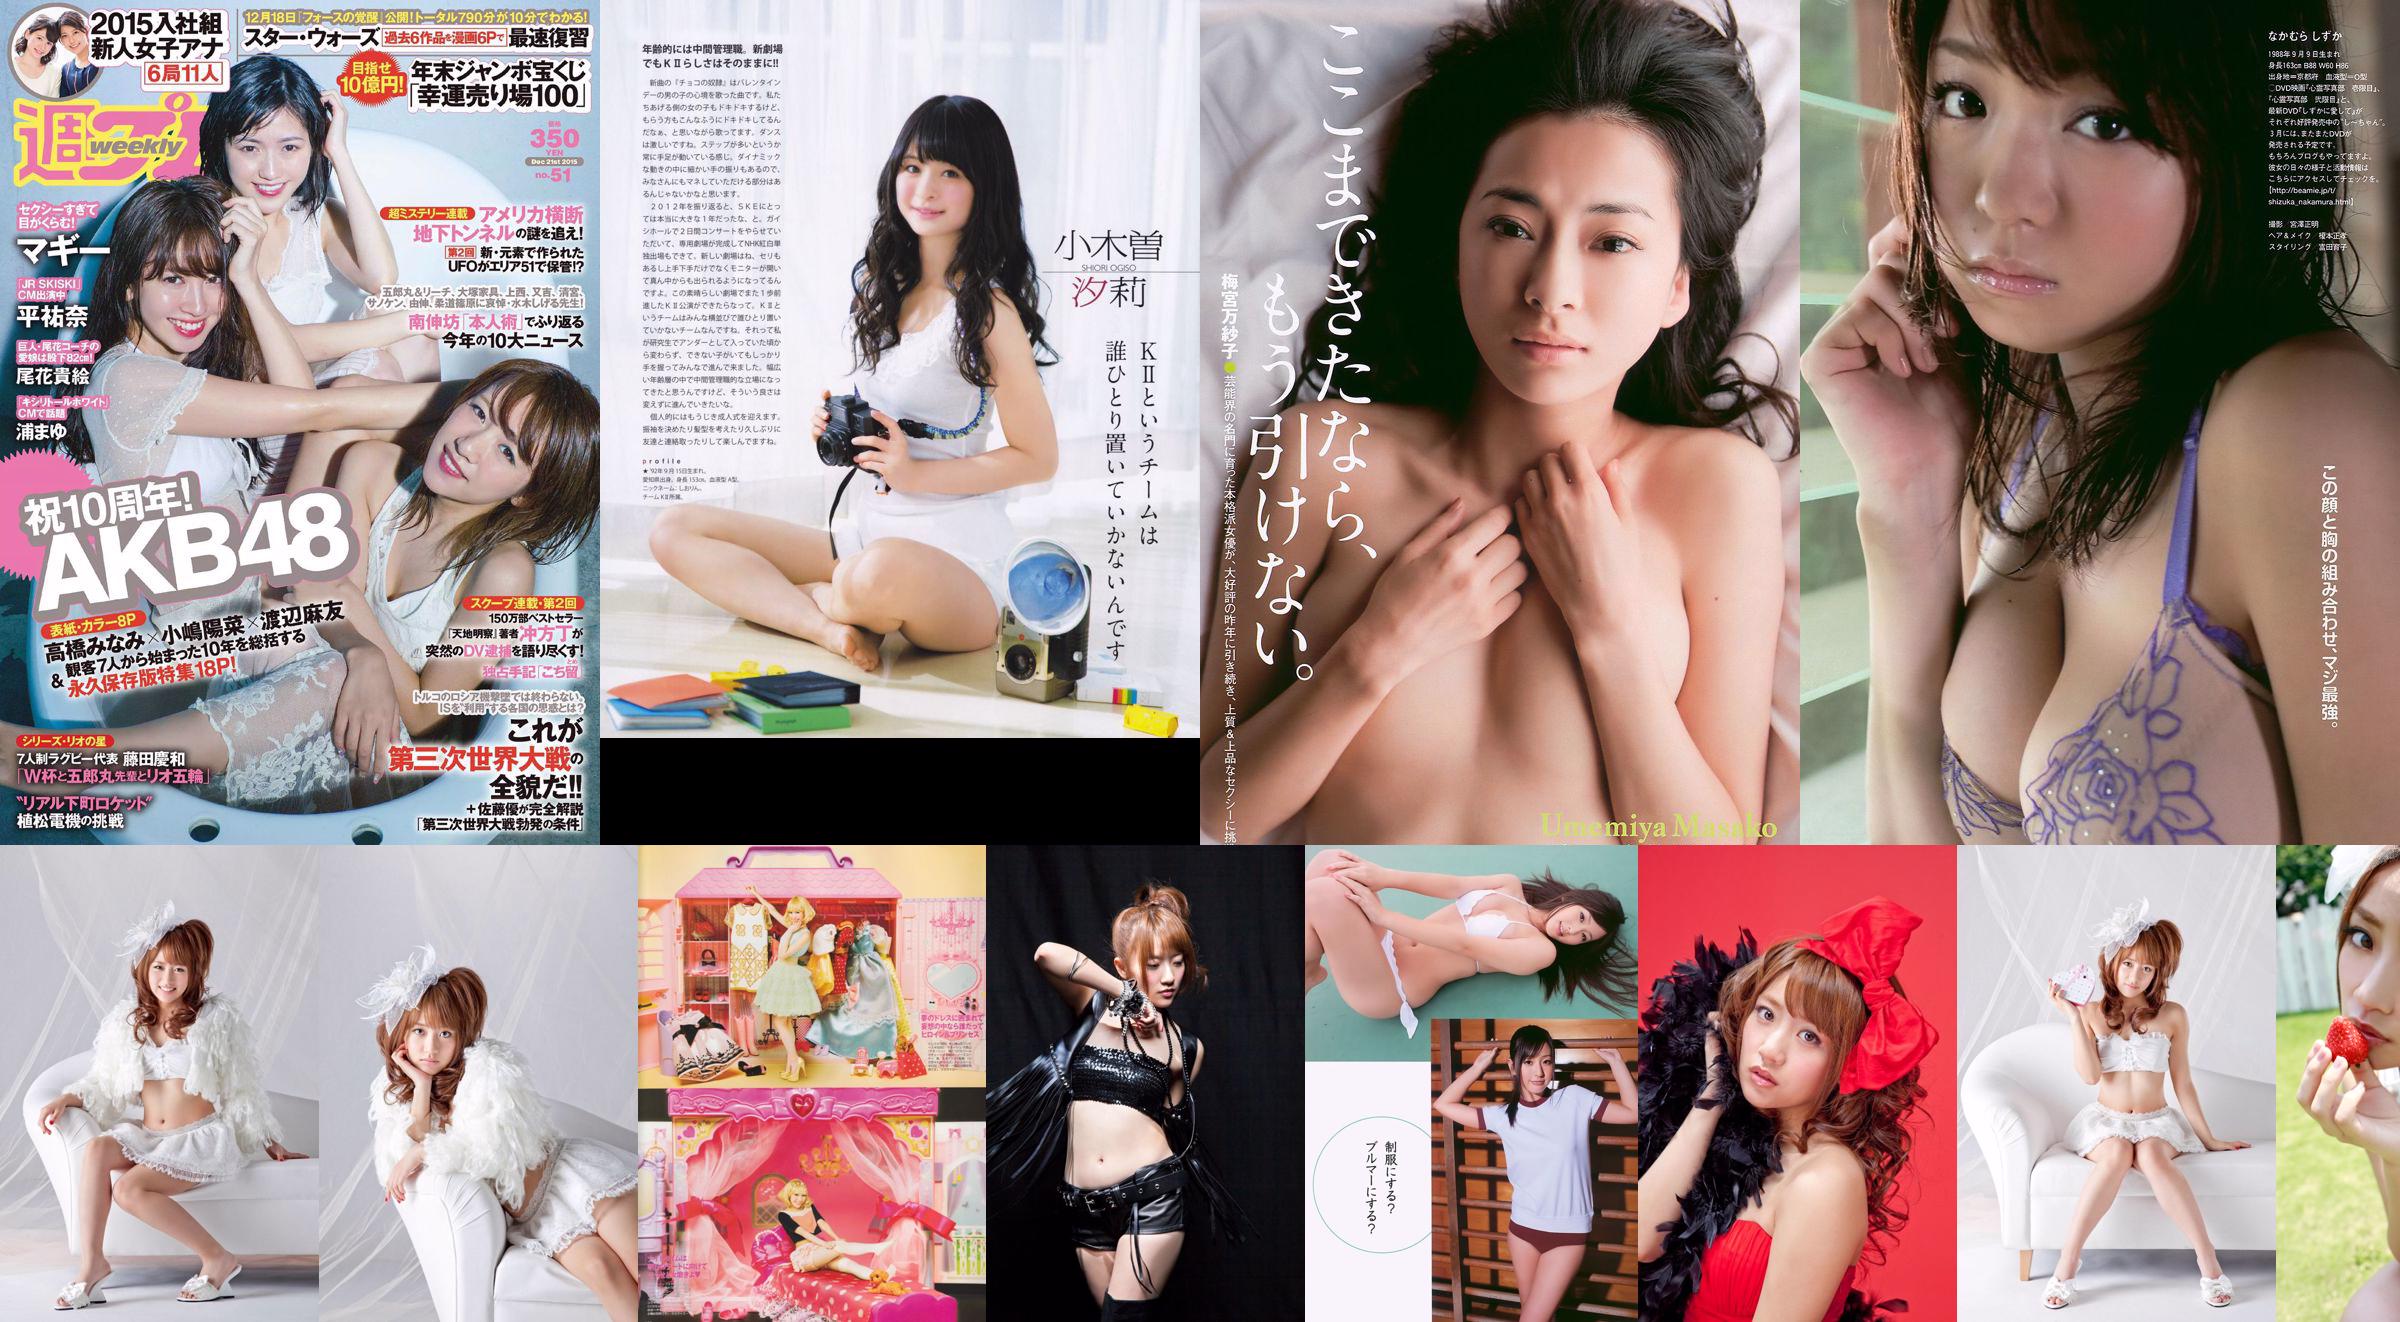 Minami Takahashi Haruna Kojima Mayu Watanabe Maggie Takae Obana Yuna Taira Mayu Ura Mitadera En [Weekly Playboy] 2015 No.51 Photo No.cee8ca Page 4